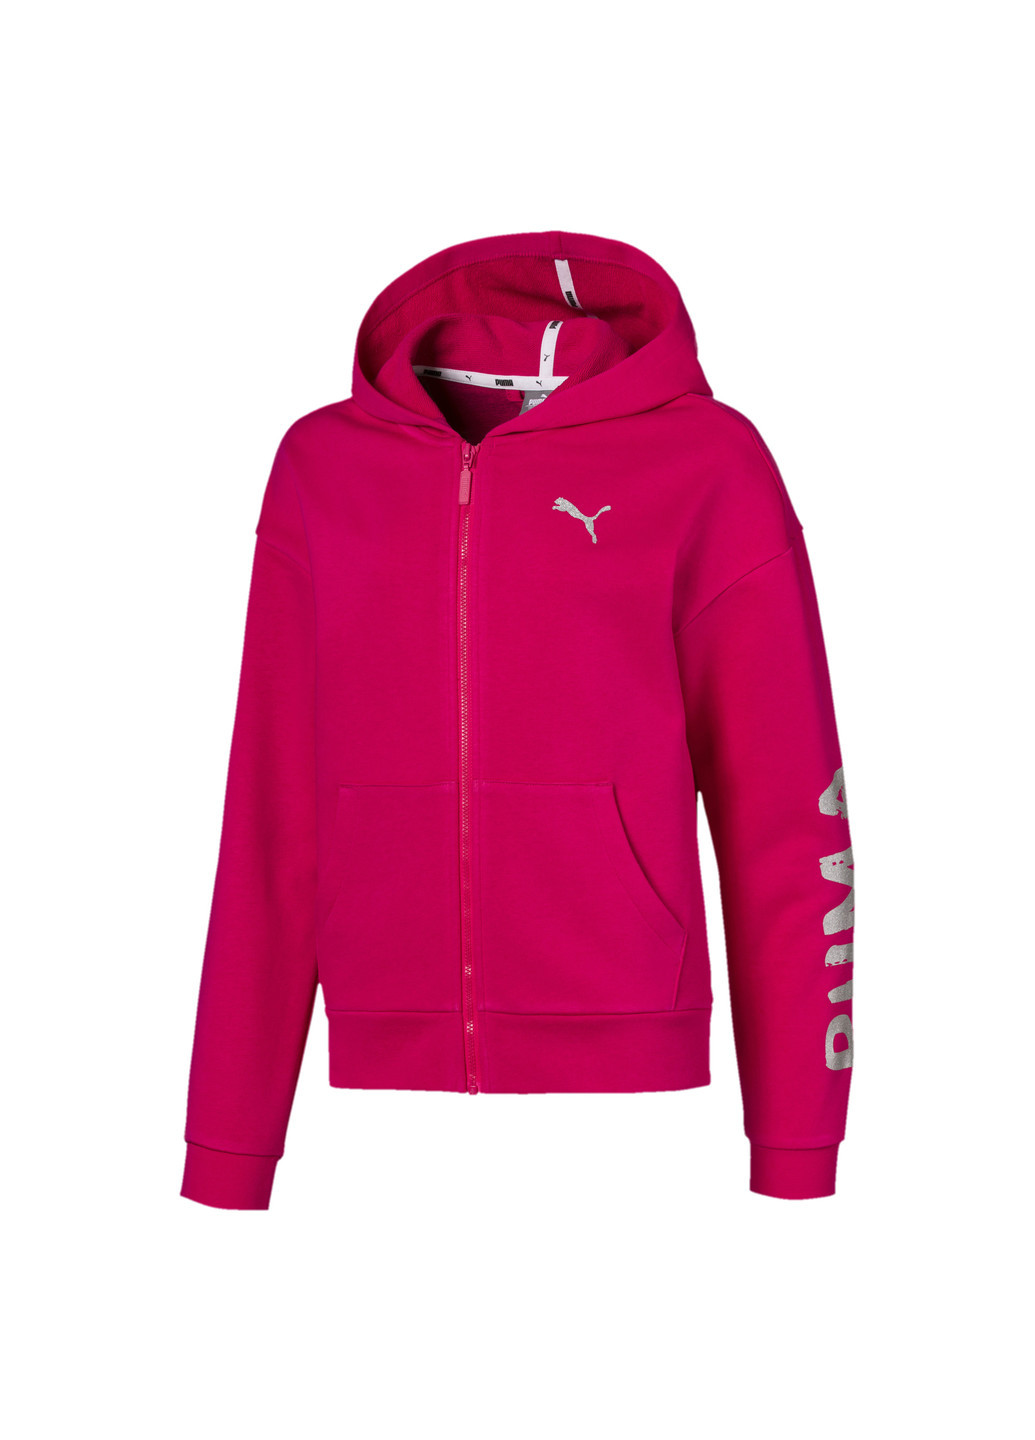 Толстовка Puma Alpha Sweat Jacket розовая спортивная